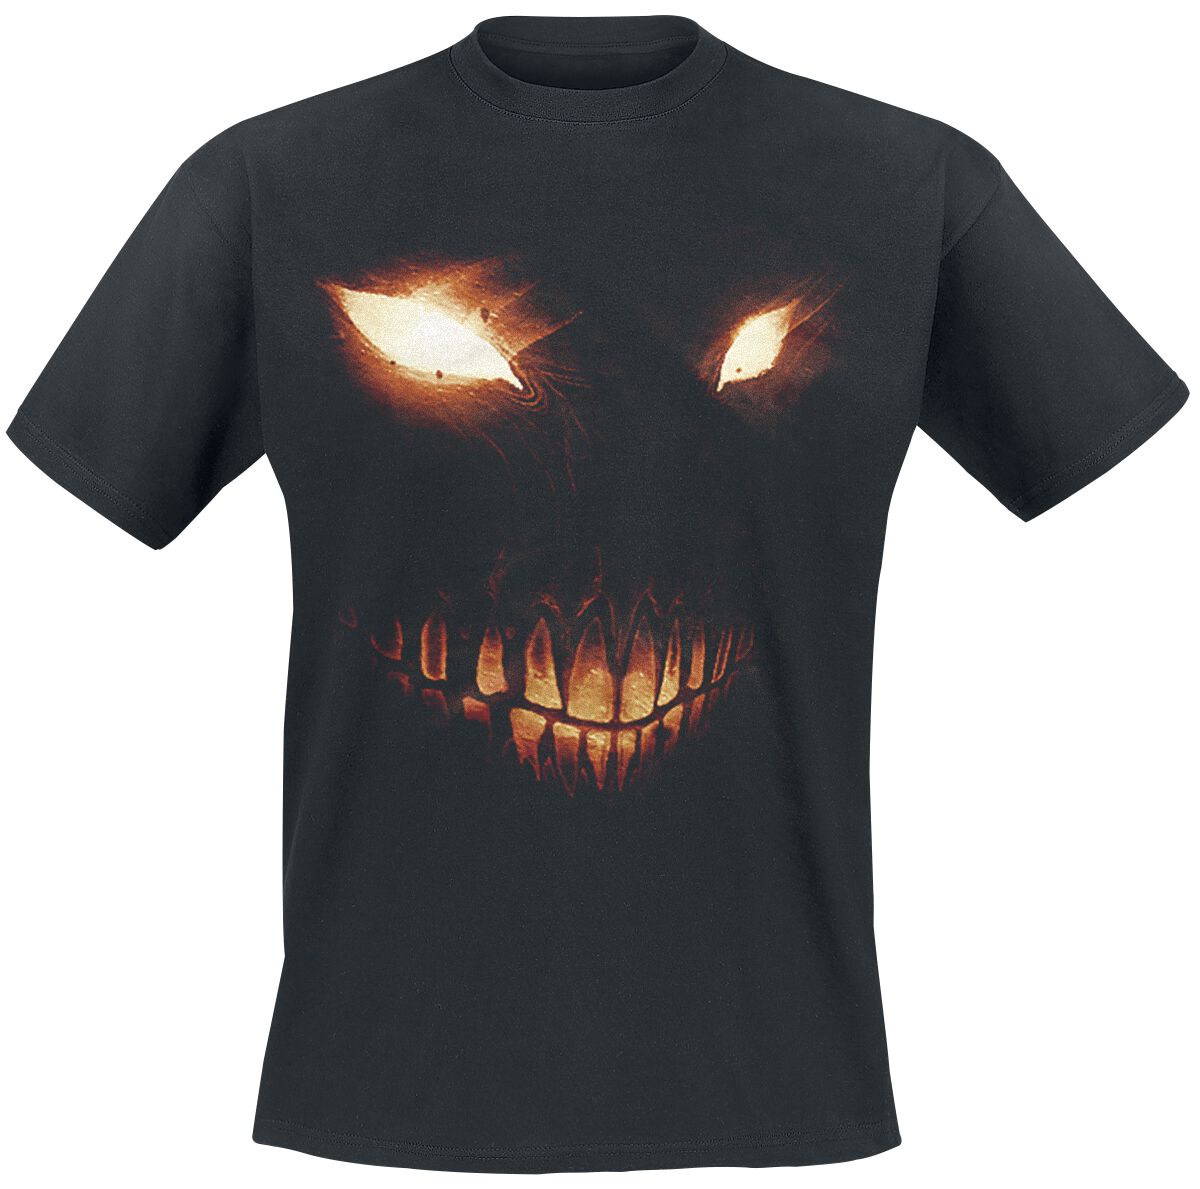 Disturbed T-Shirt - Bright Eyes - L bis 5XL - für Männer - Größe L - schwarz  - Lizenziertes Merchandise!